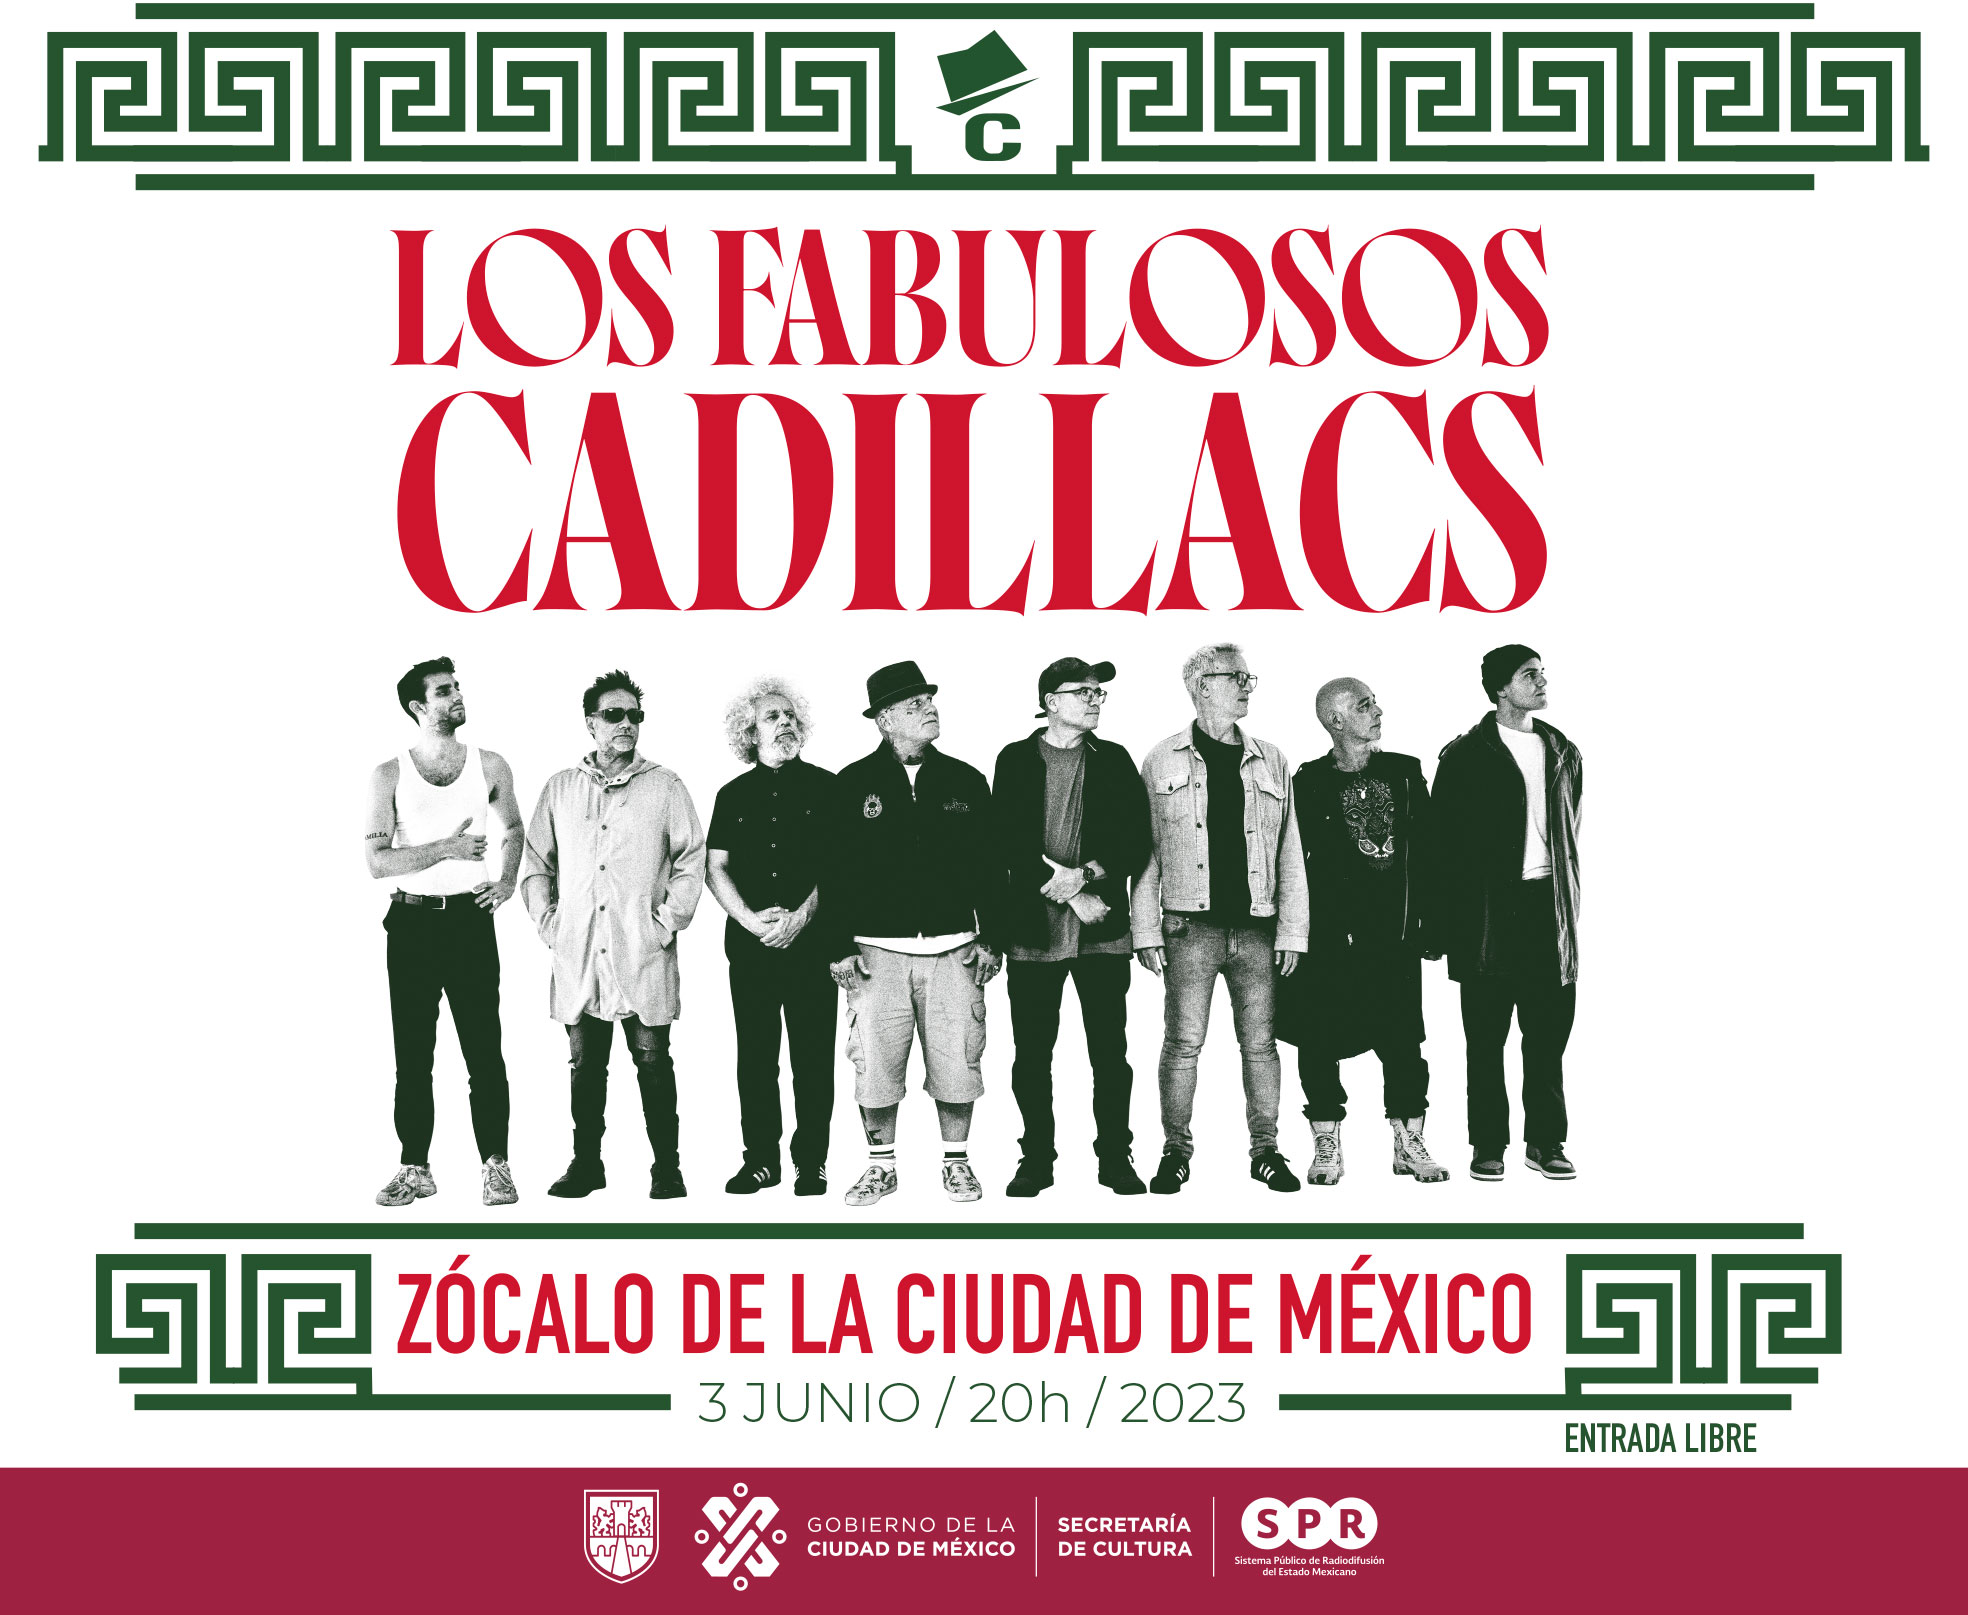 Canal Catorce transmitirá este 3 de junio el concierto de “Los Fabulosos Cadillacs” en el Zócalo capitalino